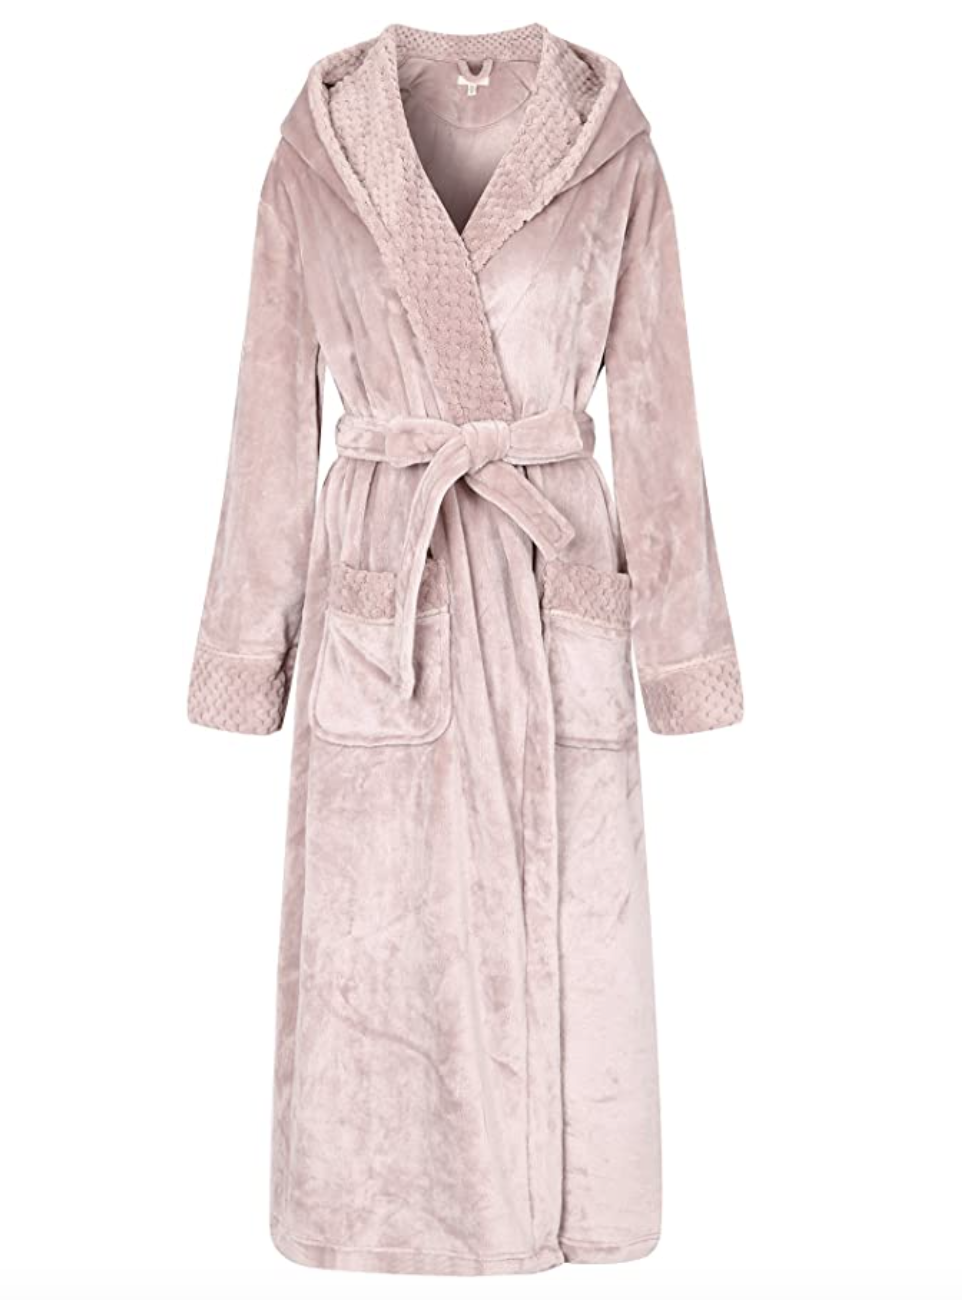 Spa Collection Warm Bathrobe Thread Republic Luxurious Men’s Plush Fleece Robe 